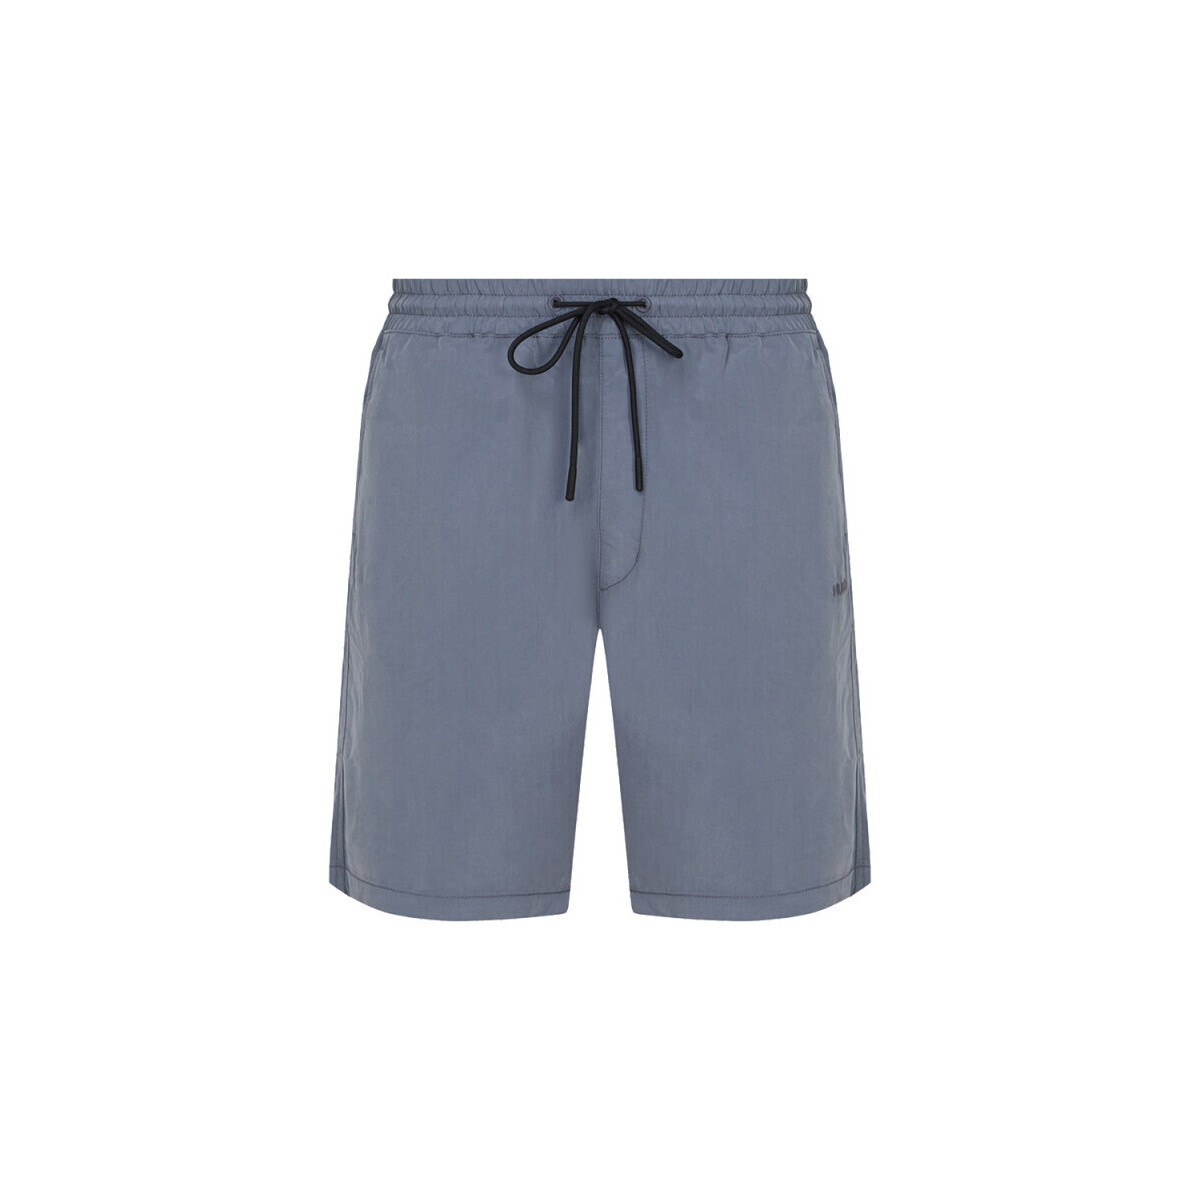 Vêtements Homme Shorts / Bermudas BOSS SHORT  BLEU PASTEL DAN242 Bleu